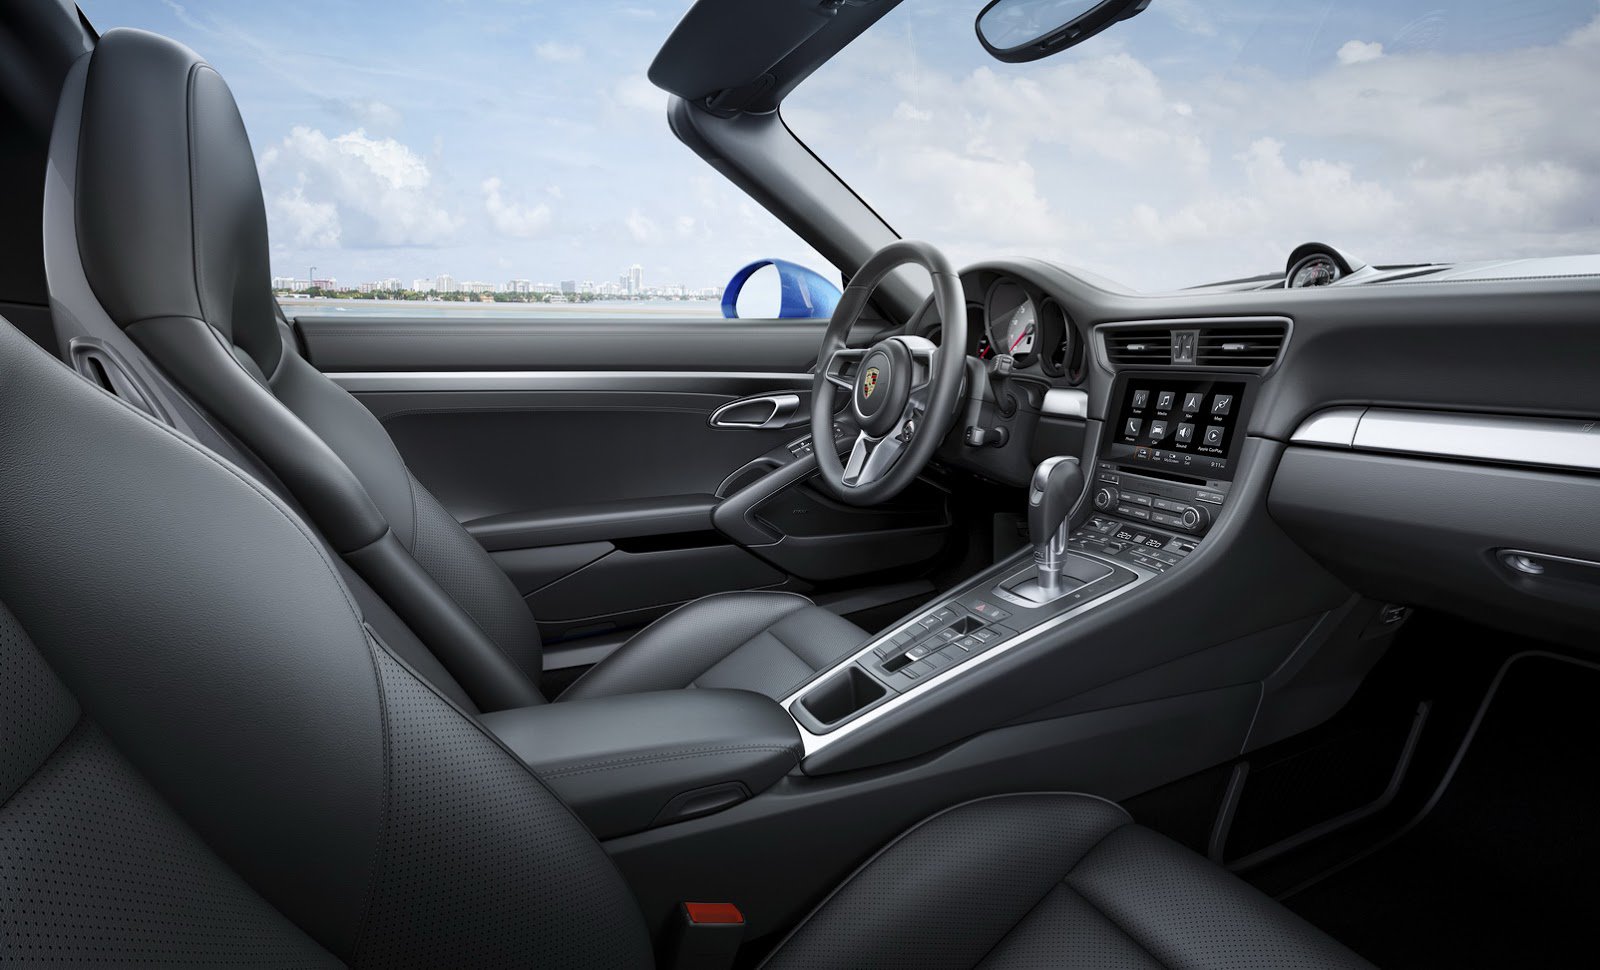 Upravený volant je jednou z dalších novinek, nové Porsche 911 Targa 4.